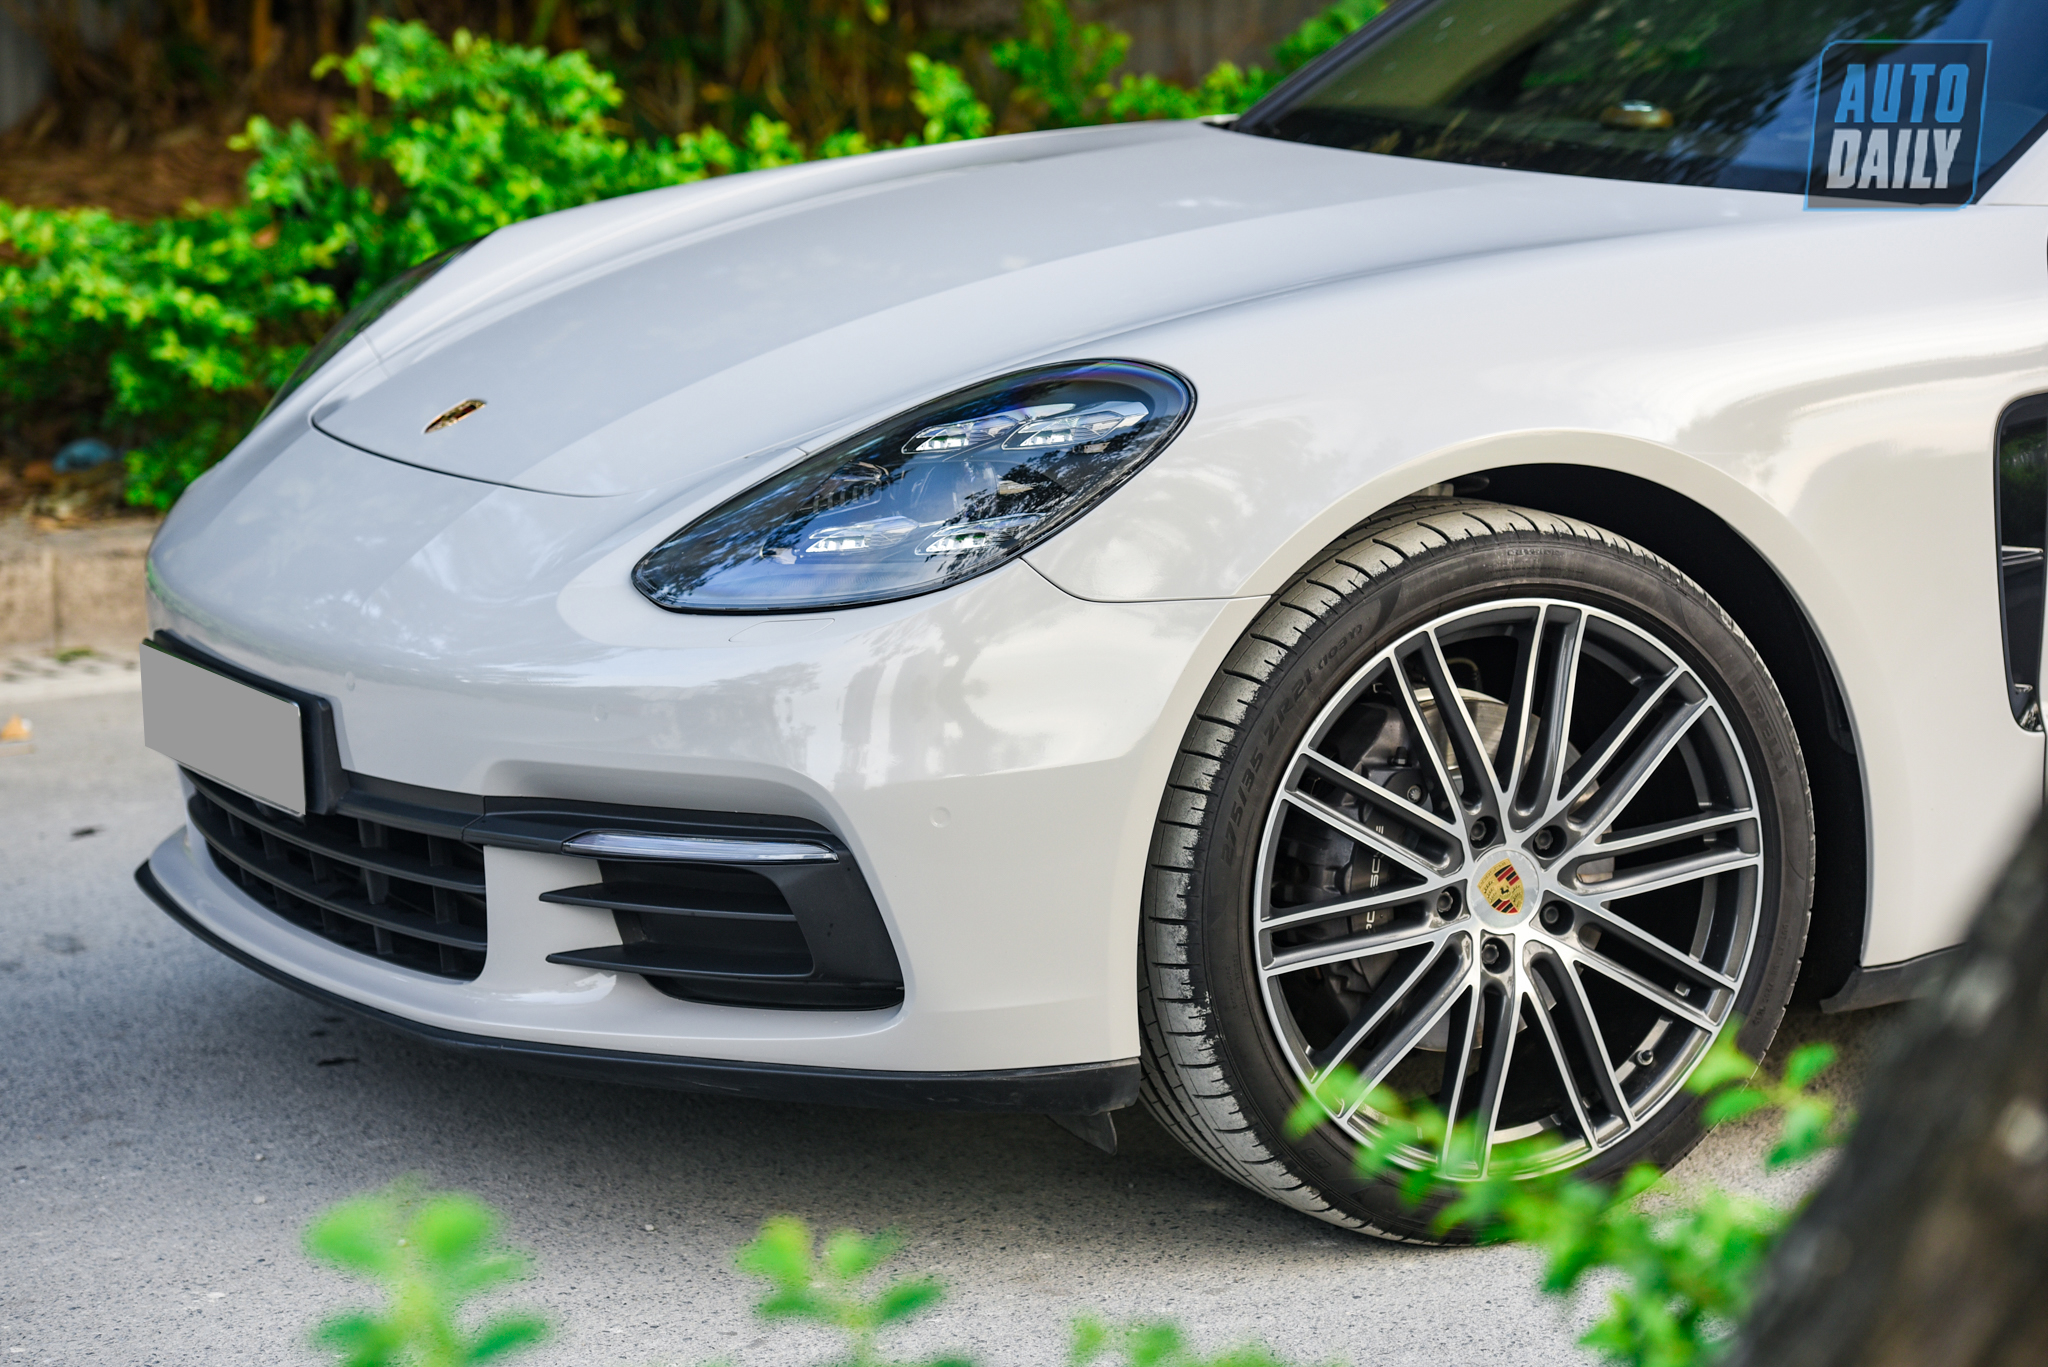 Sau 3 năm, Porsche Panamera được bán lại rẻ hơn gần 2 tỷ đồng dsc-2071.jpg